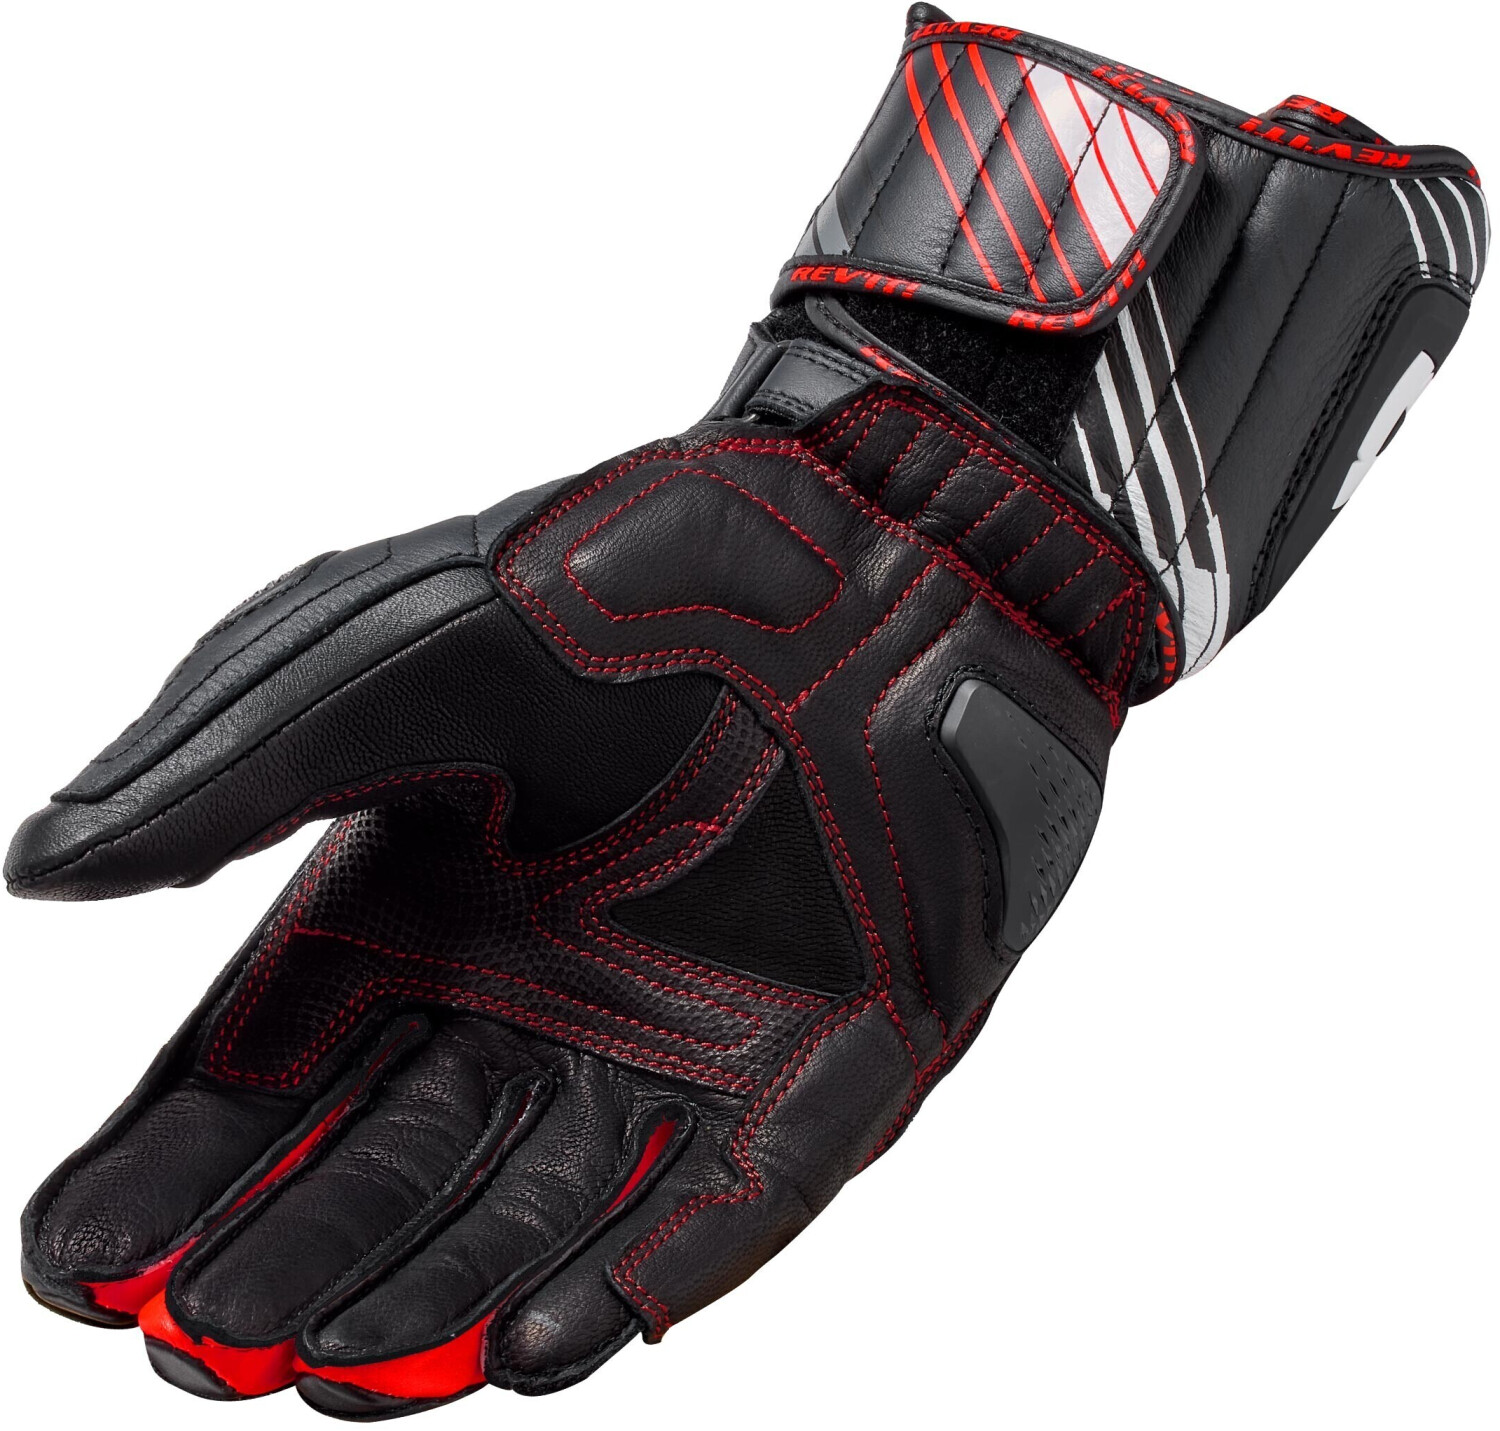 Prezzo del guanti moto alpinestars celer v2 black red fluo